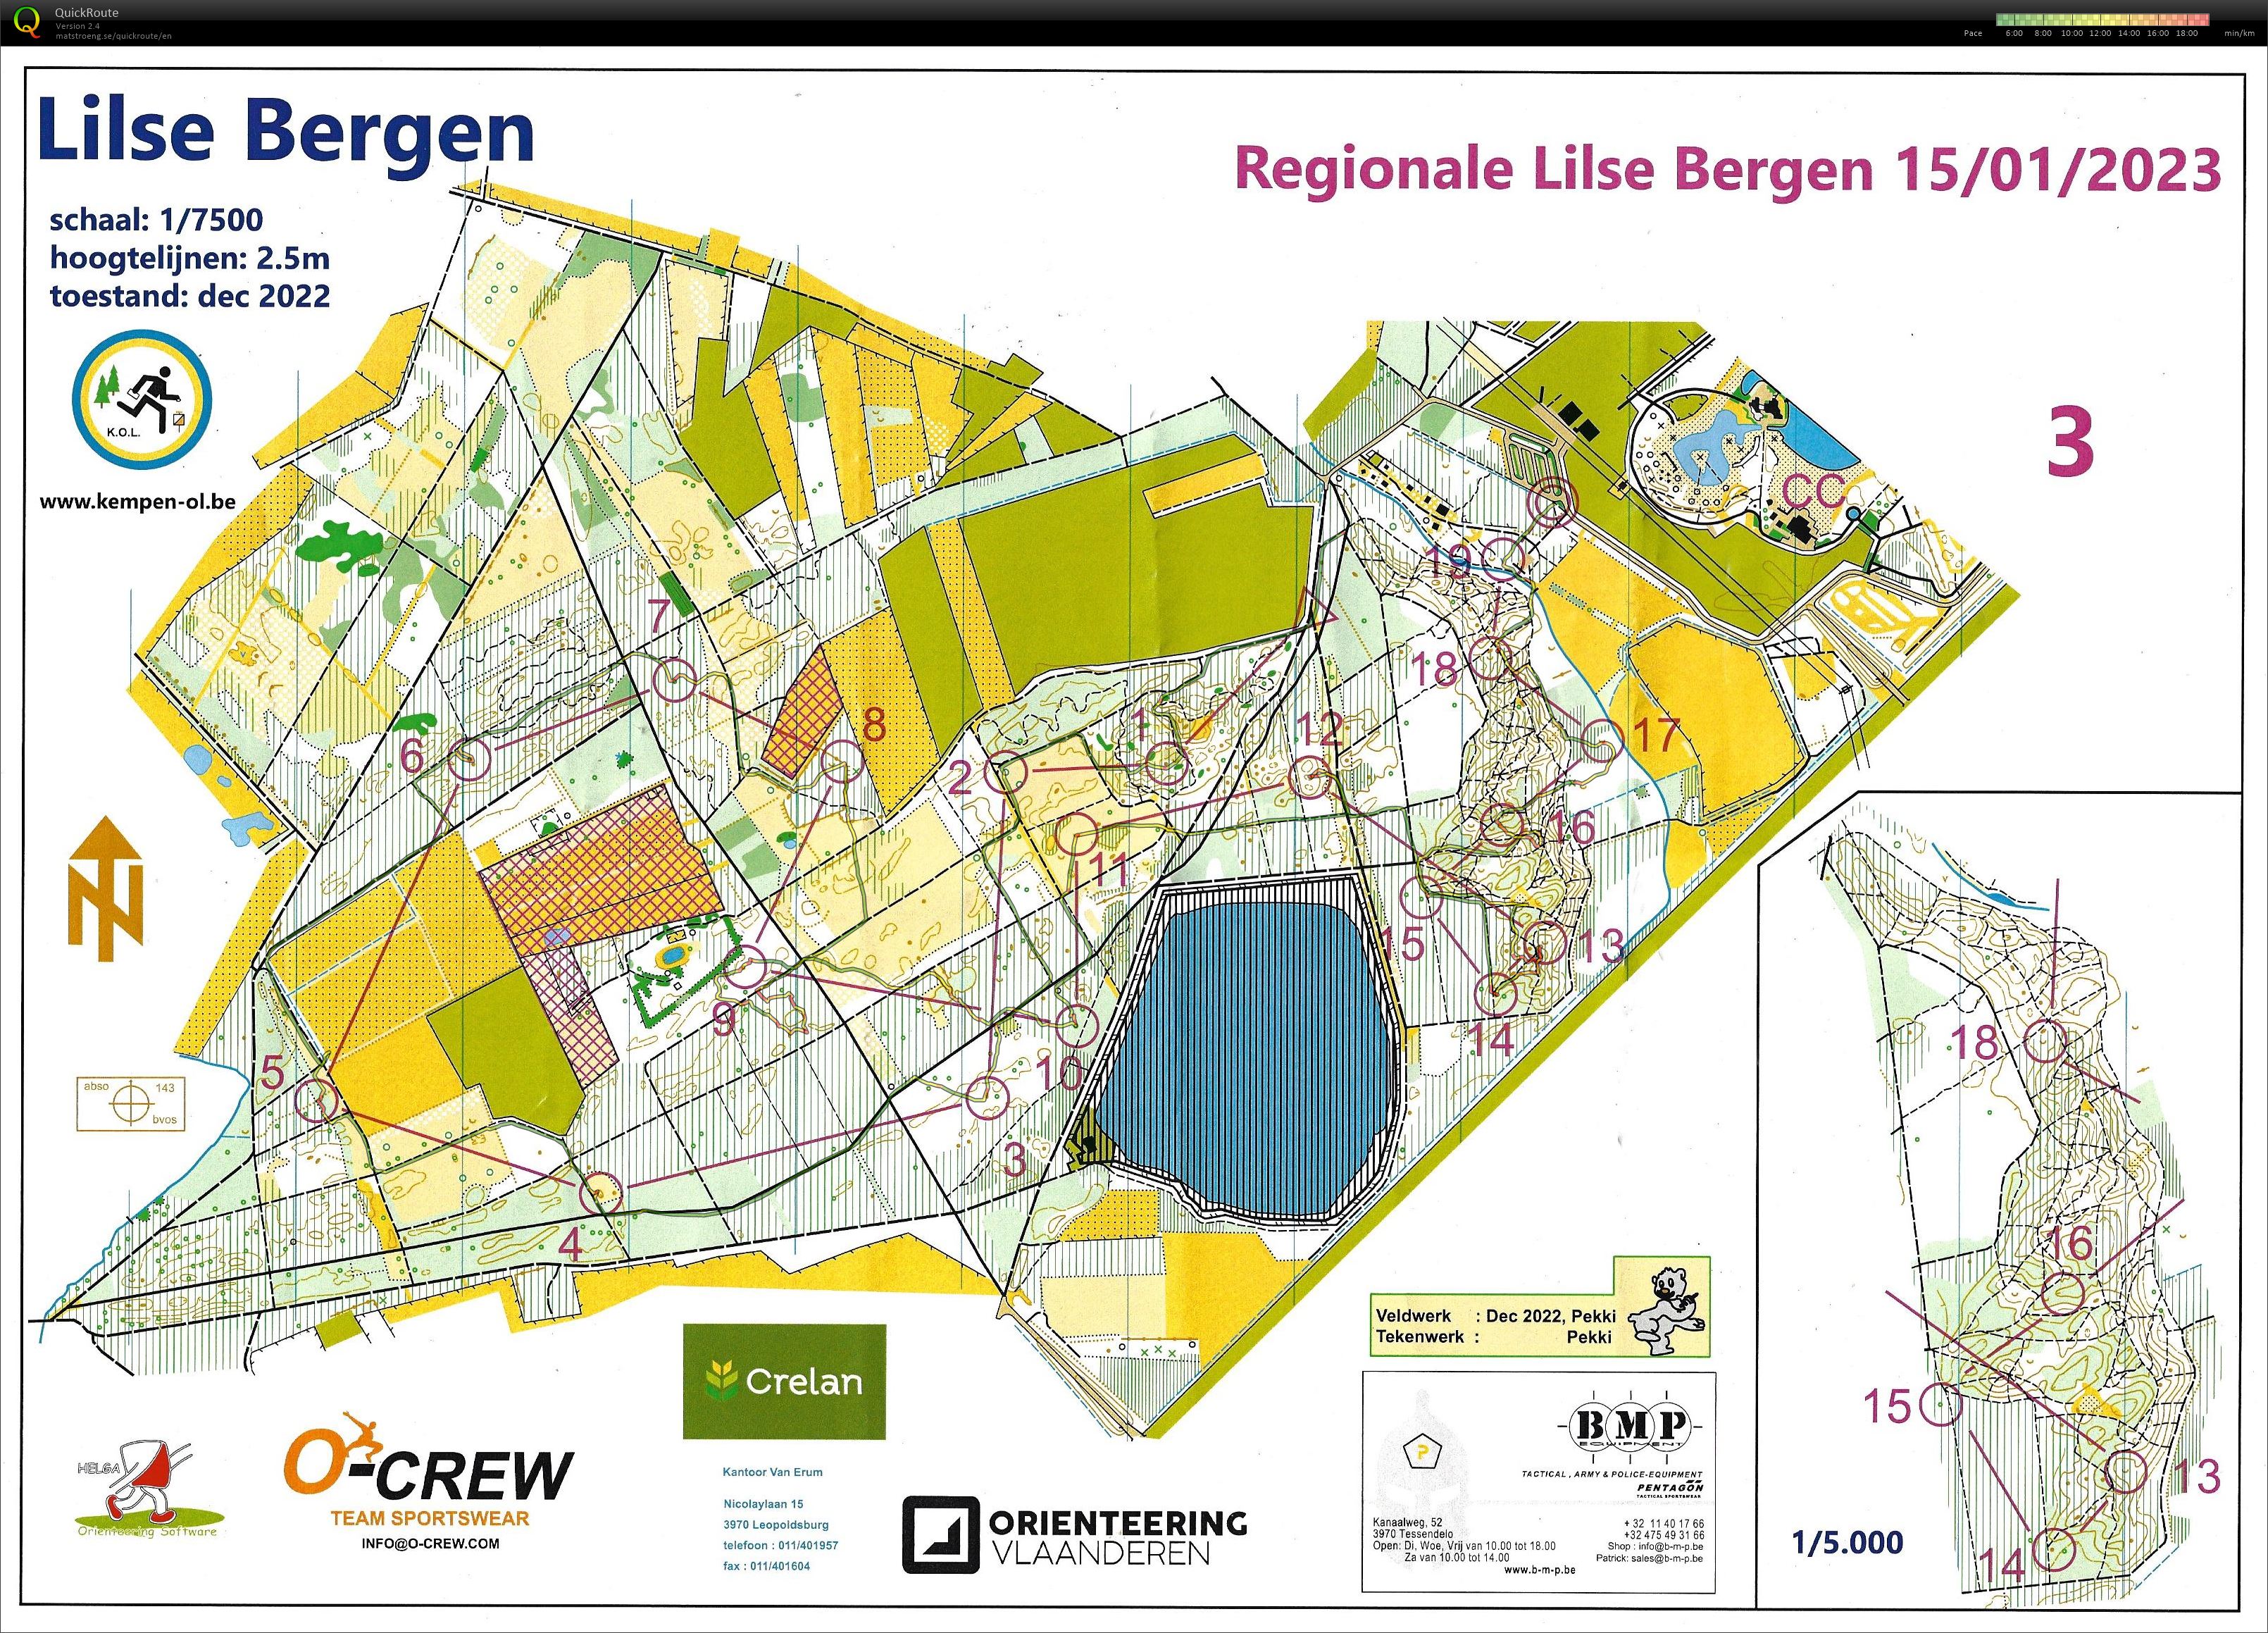 Lilse Bergen (15/01/2023)